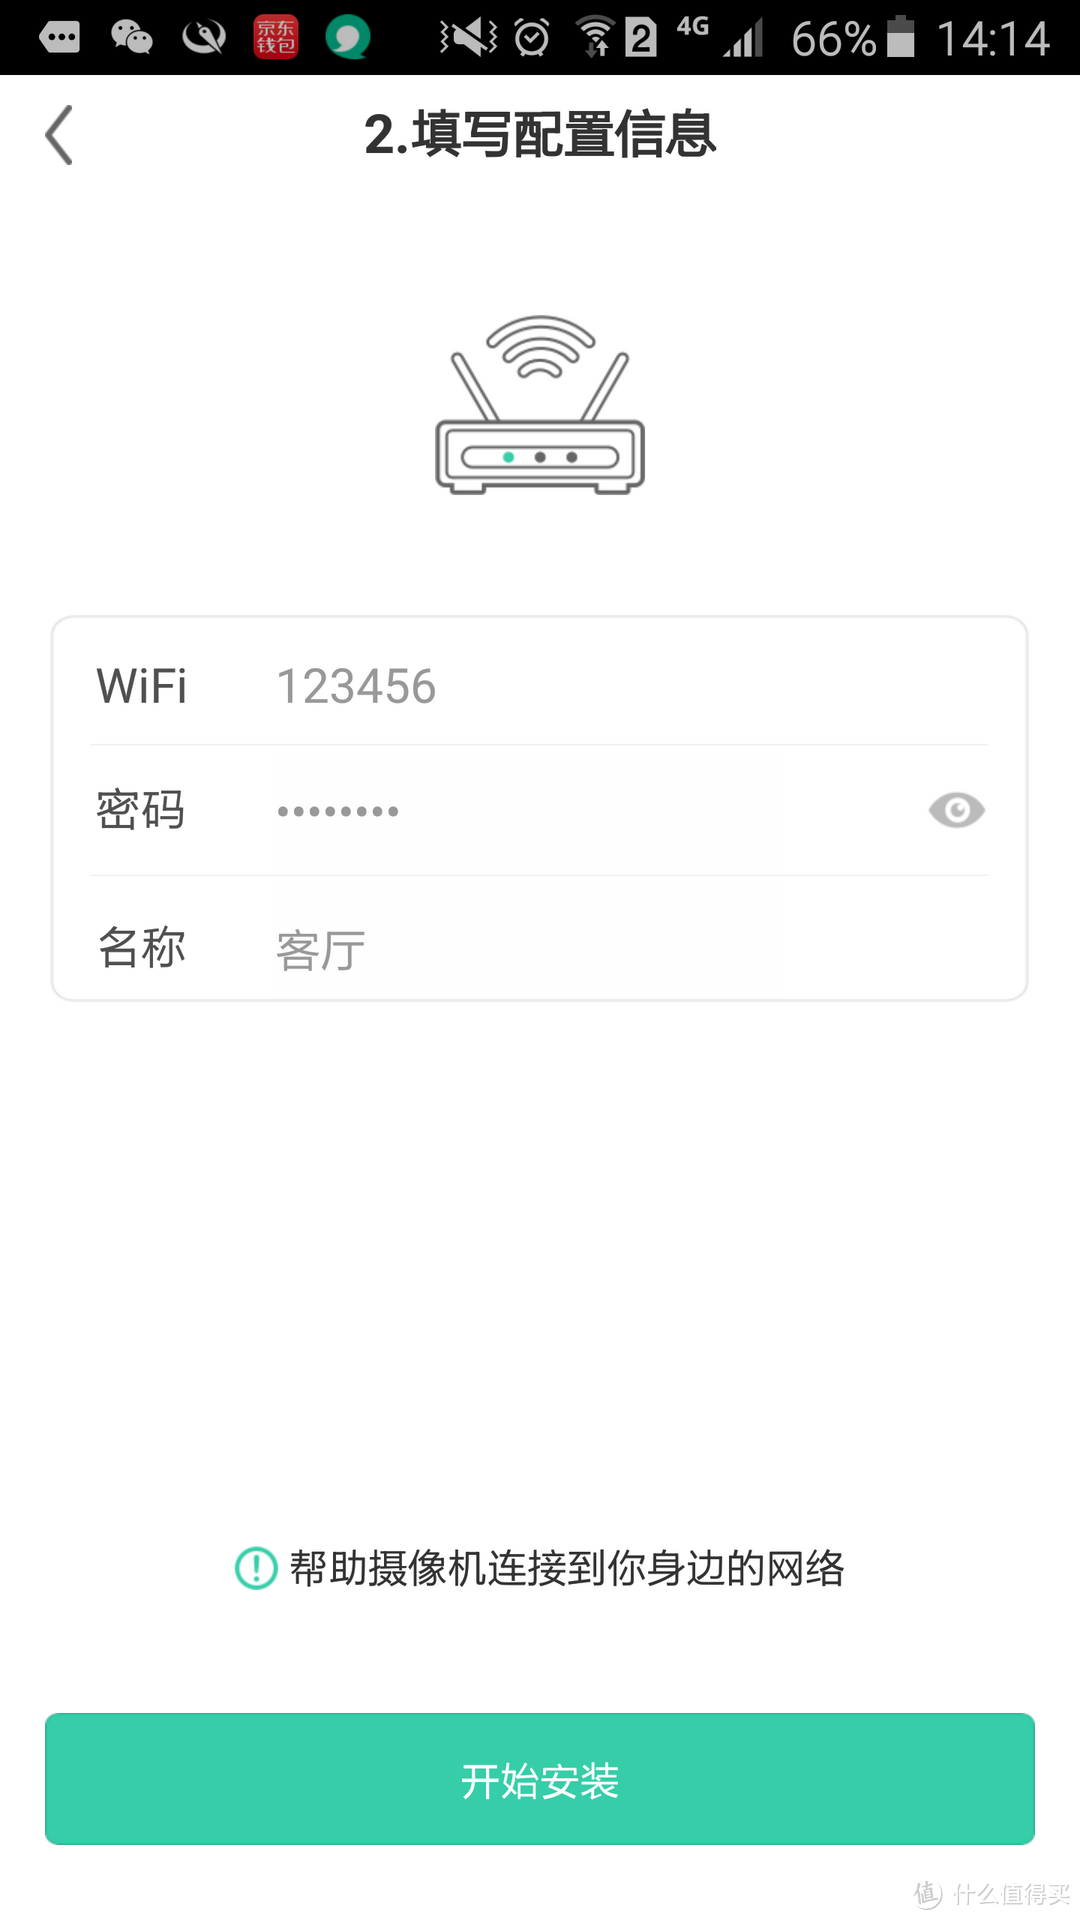 简单家居安防搭配——Netease 网易青果 720p智能WiFi 摄像机